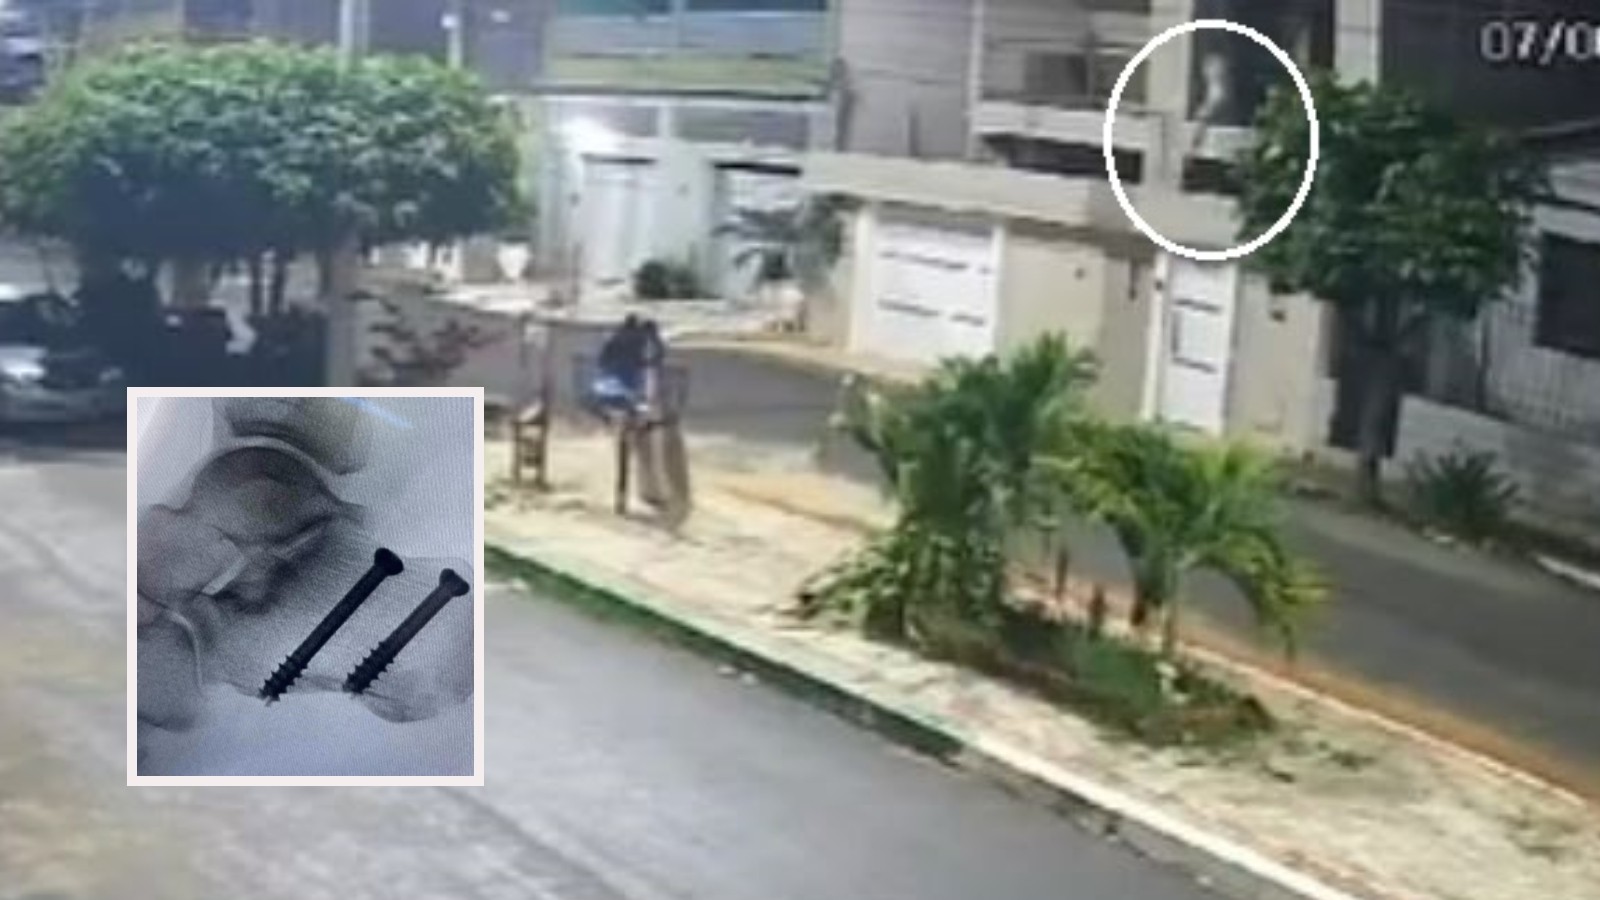 Vídeo: Mulher pula do 2º andar de casa e fratura calcanhar enquanto família é mantida refém em assalto